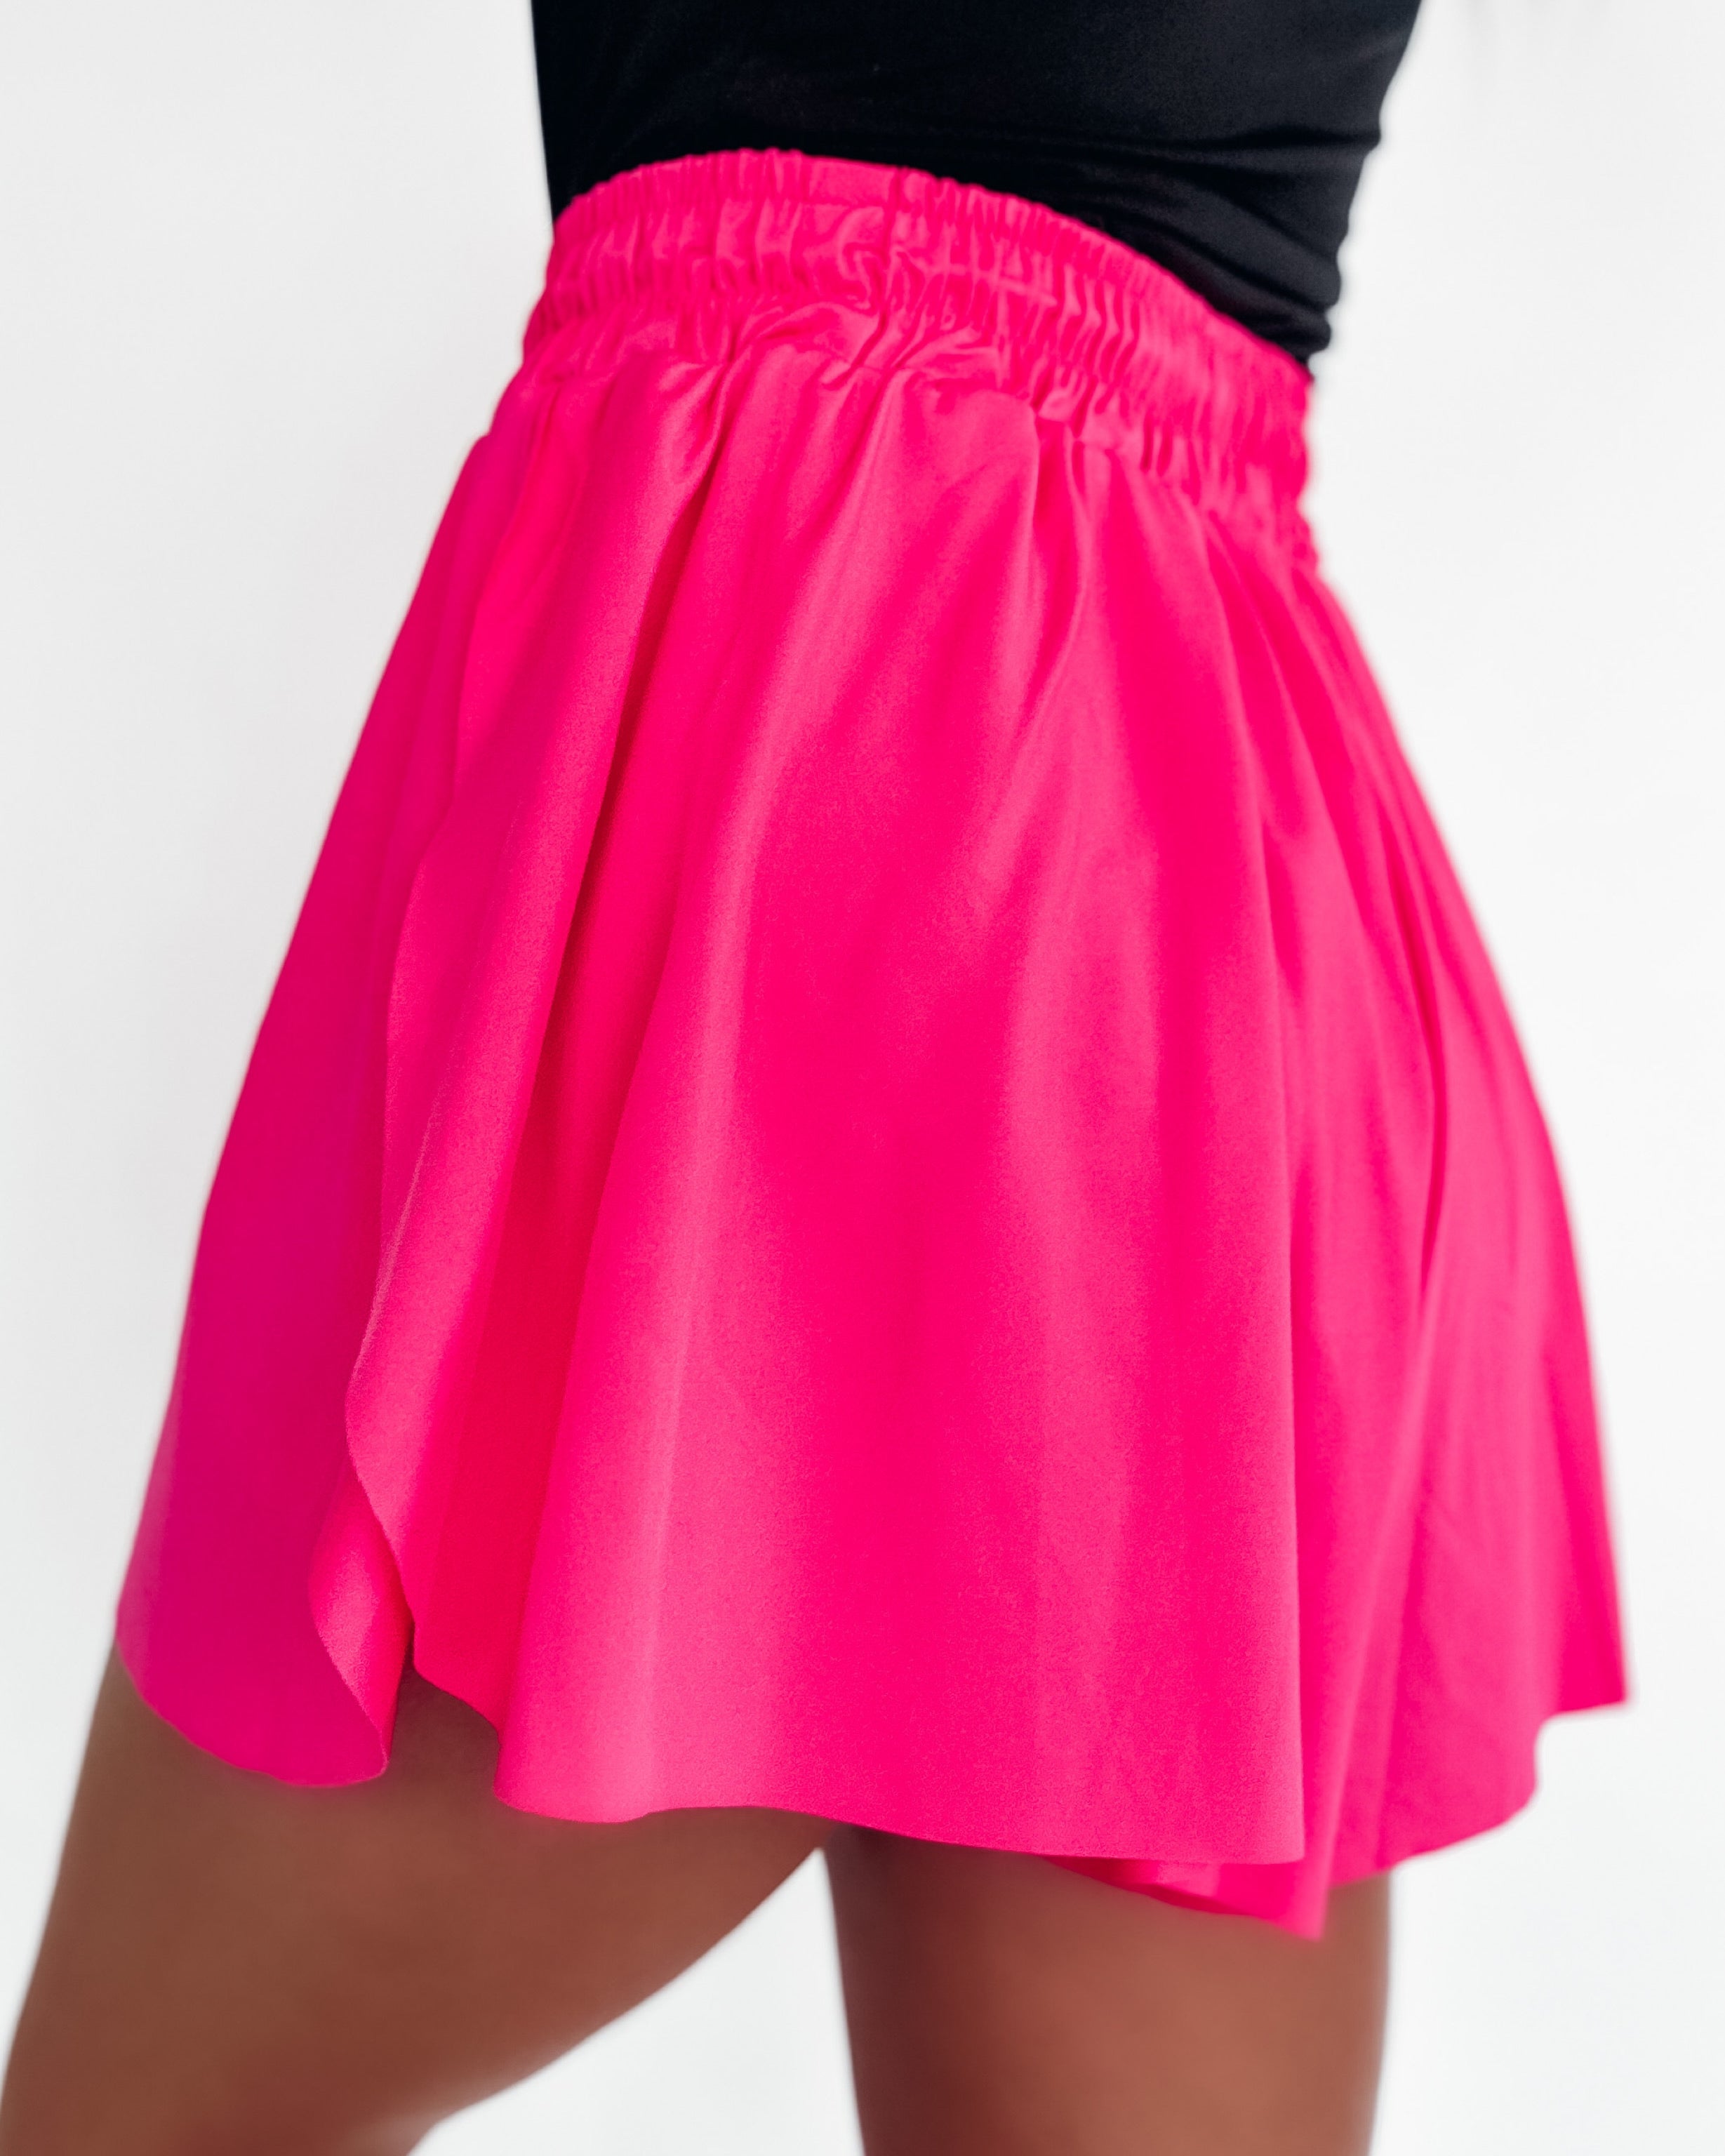 Motion Fusion Layered Shorts - Hot Pink